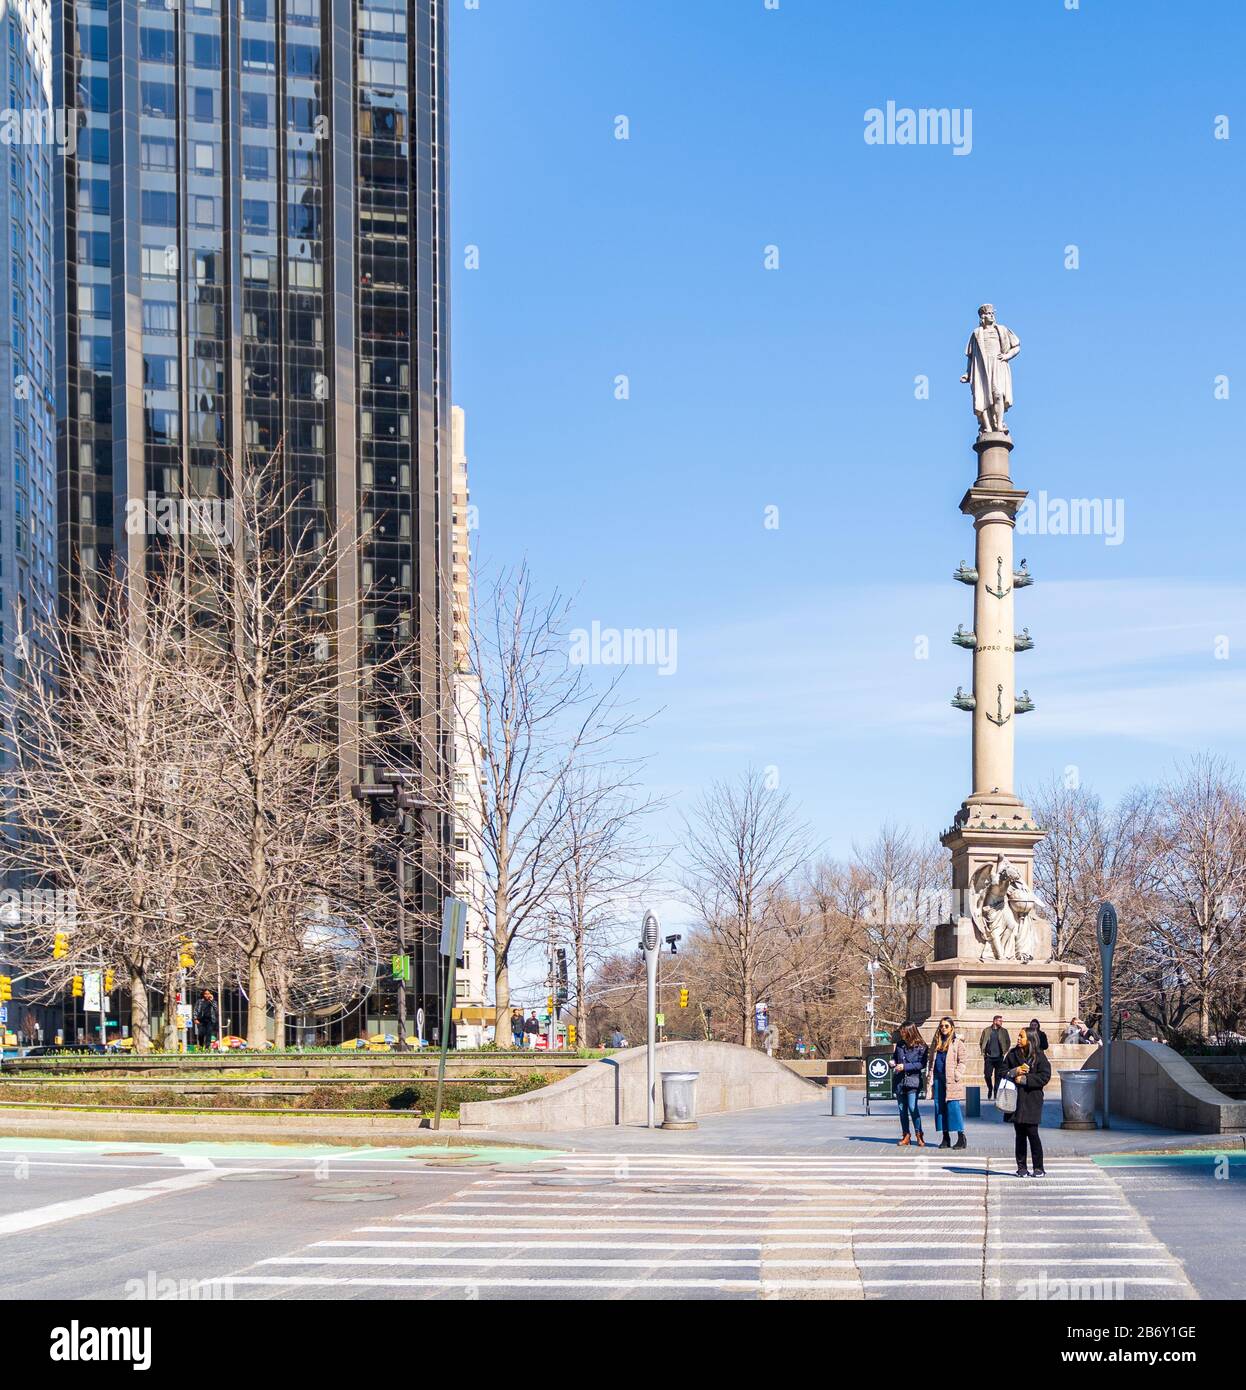 Columbus Circle, New York - 8. März 2020: Ein friedlicher Columbus Circle eine Woche vor der NYC-Abschaltung wegen der Coronavirus Pandemie. Stockfoto